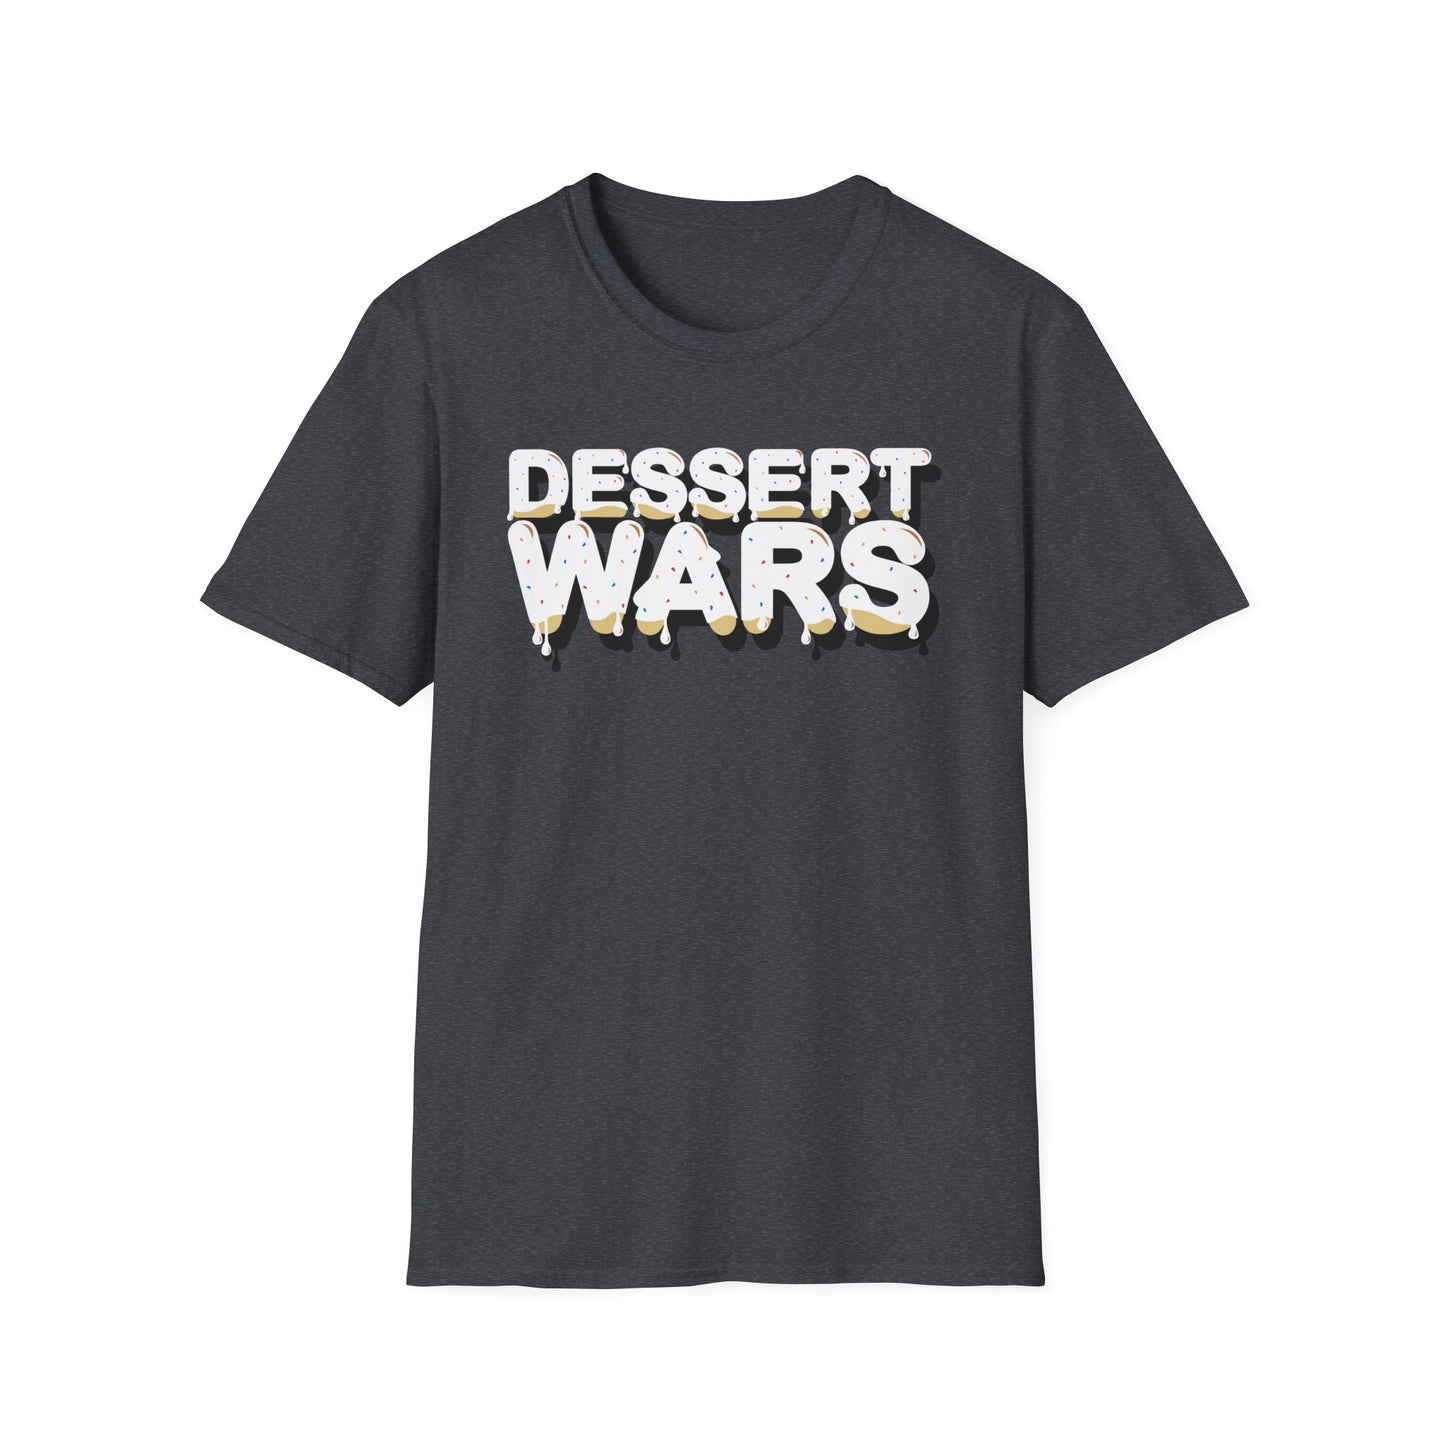 Dessert Wars - Unisex Softstyle T-Shirt